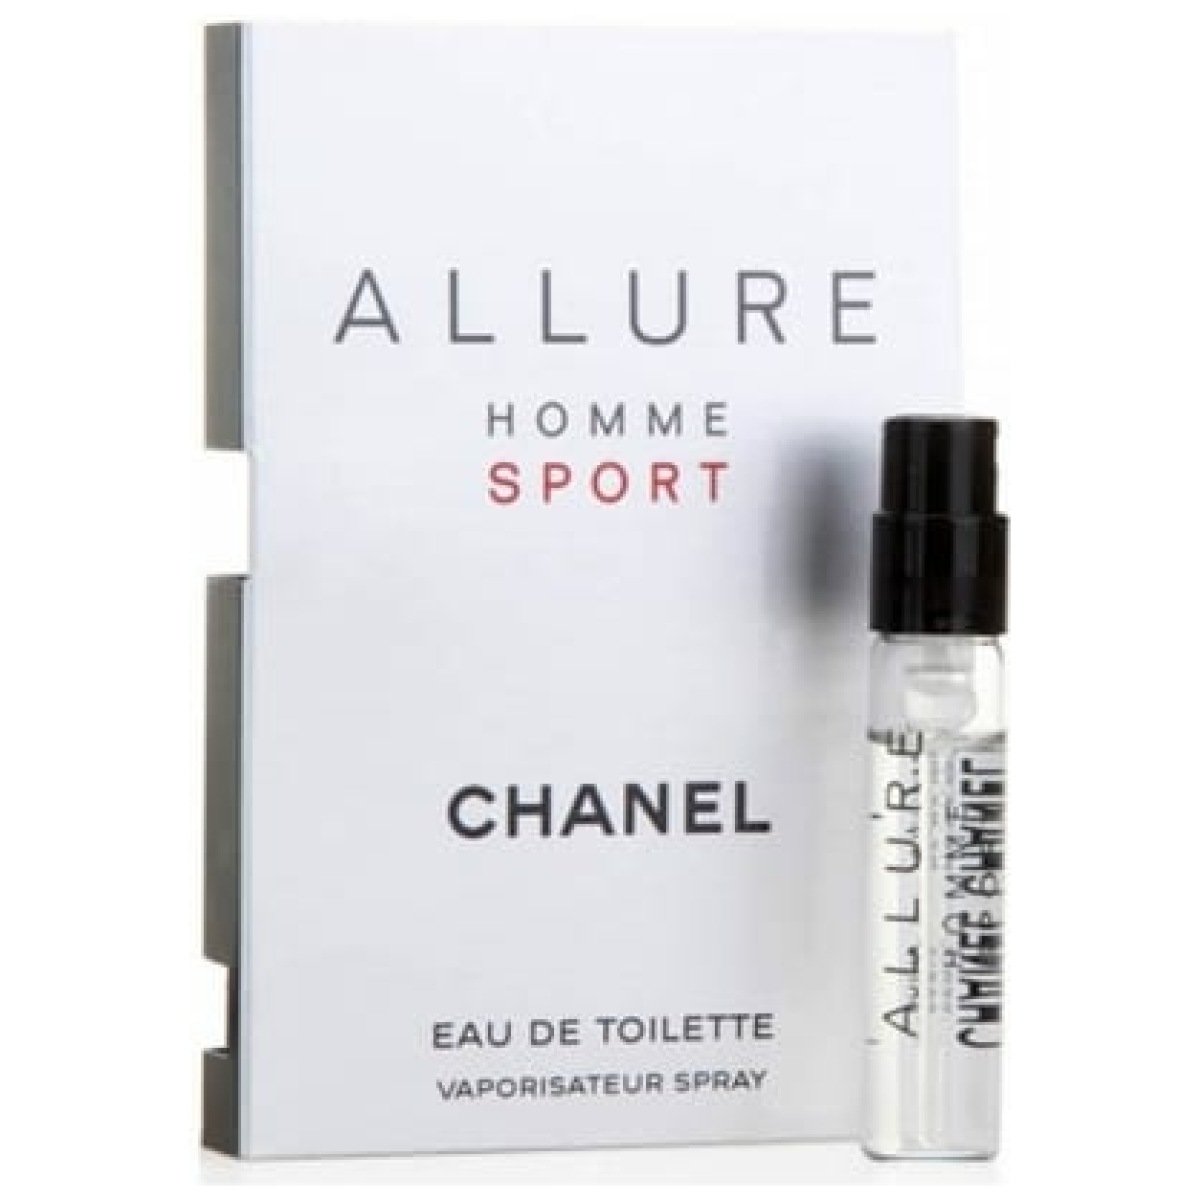 Chanel Allure Homme Sport EDT Pocket Perfume For Men 1.5ml